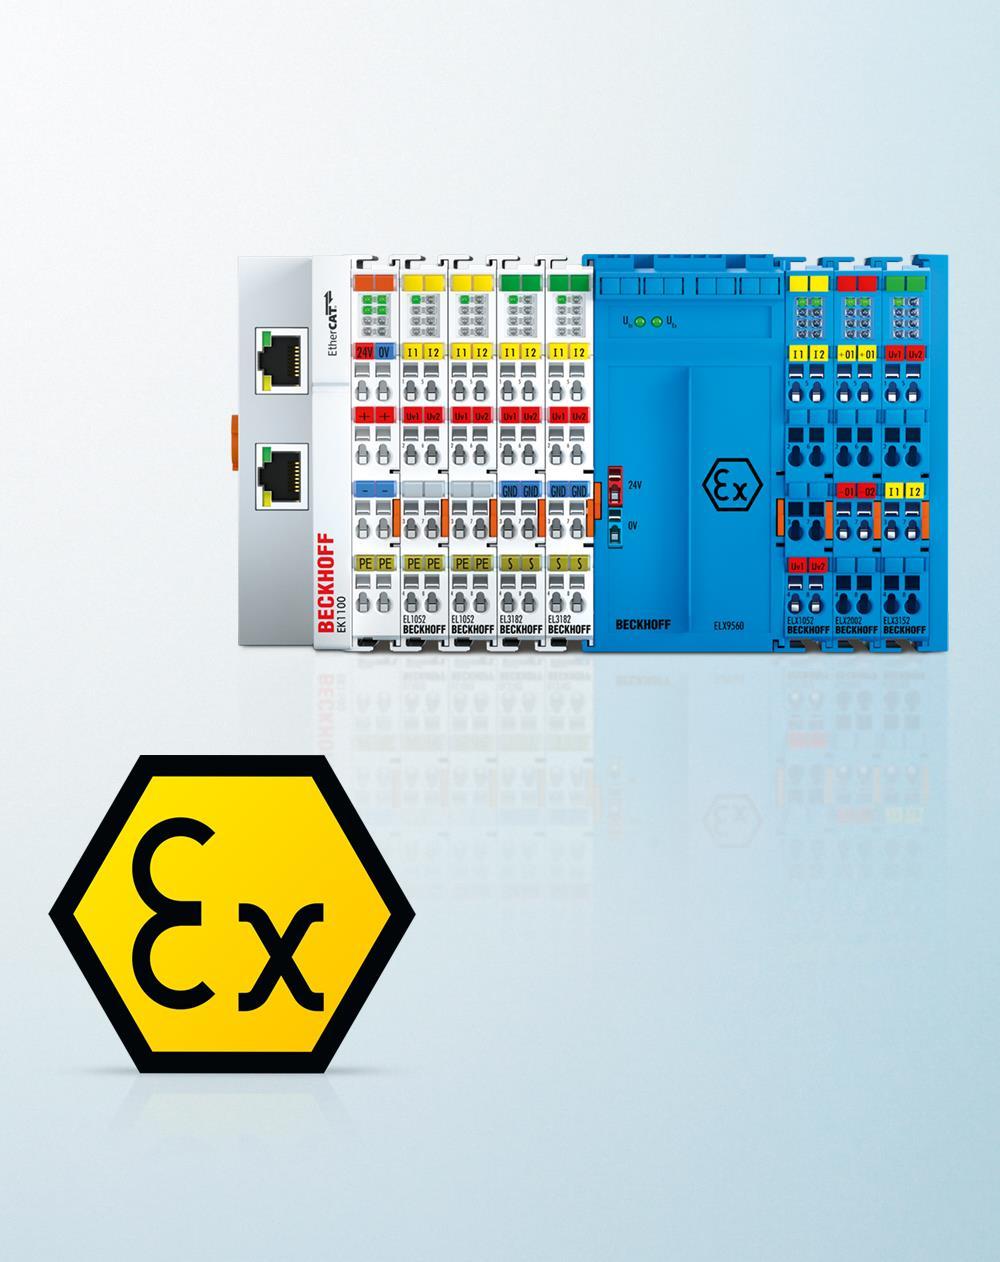 ELX Kompaktní I/O s jiskrovou bezpečností: EtherCAT Terminály pro použití ve výbušném prostředí ELX série: EtherCAT Terminály zajišťující jiskrovou bezpečnost ve 12 mm terminálu